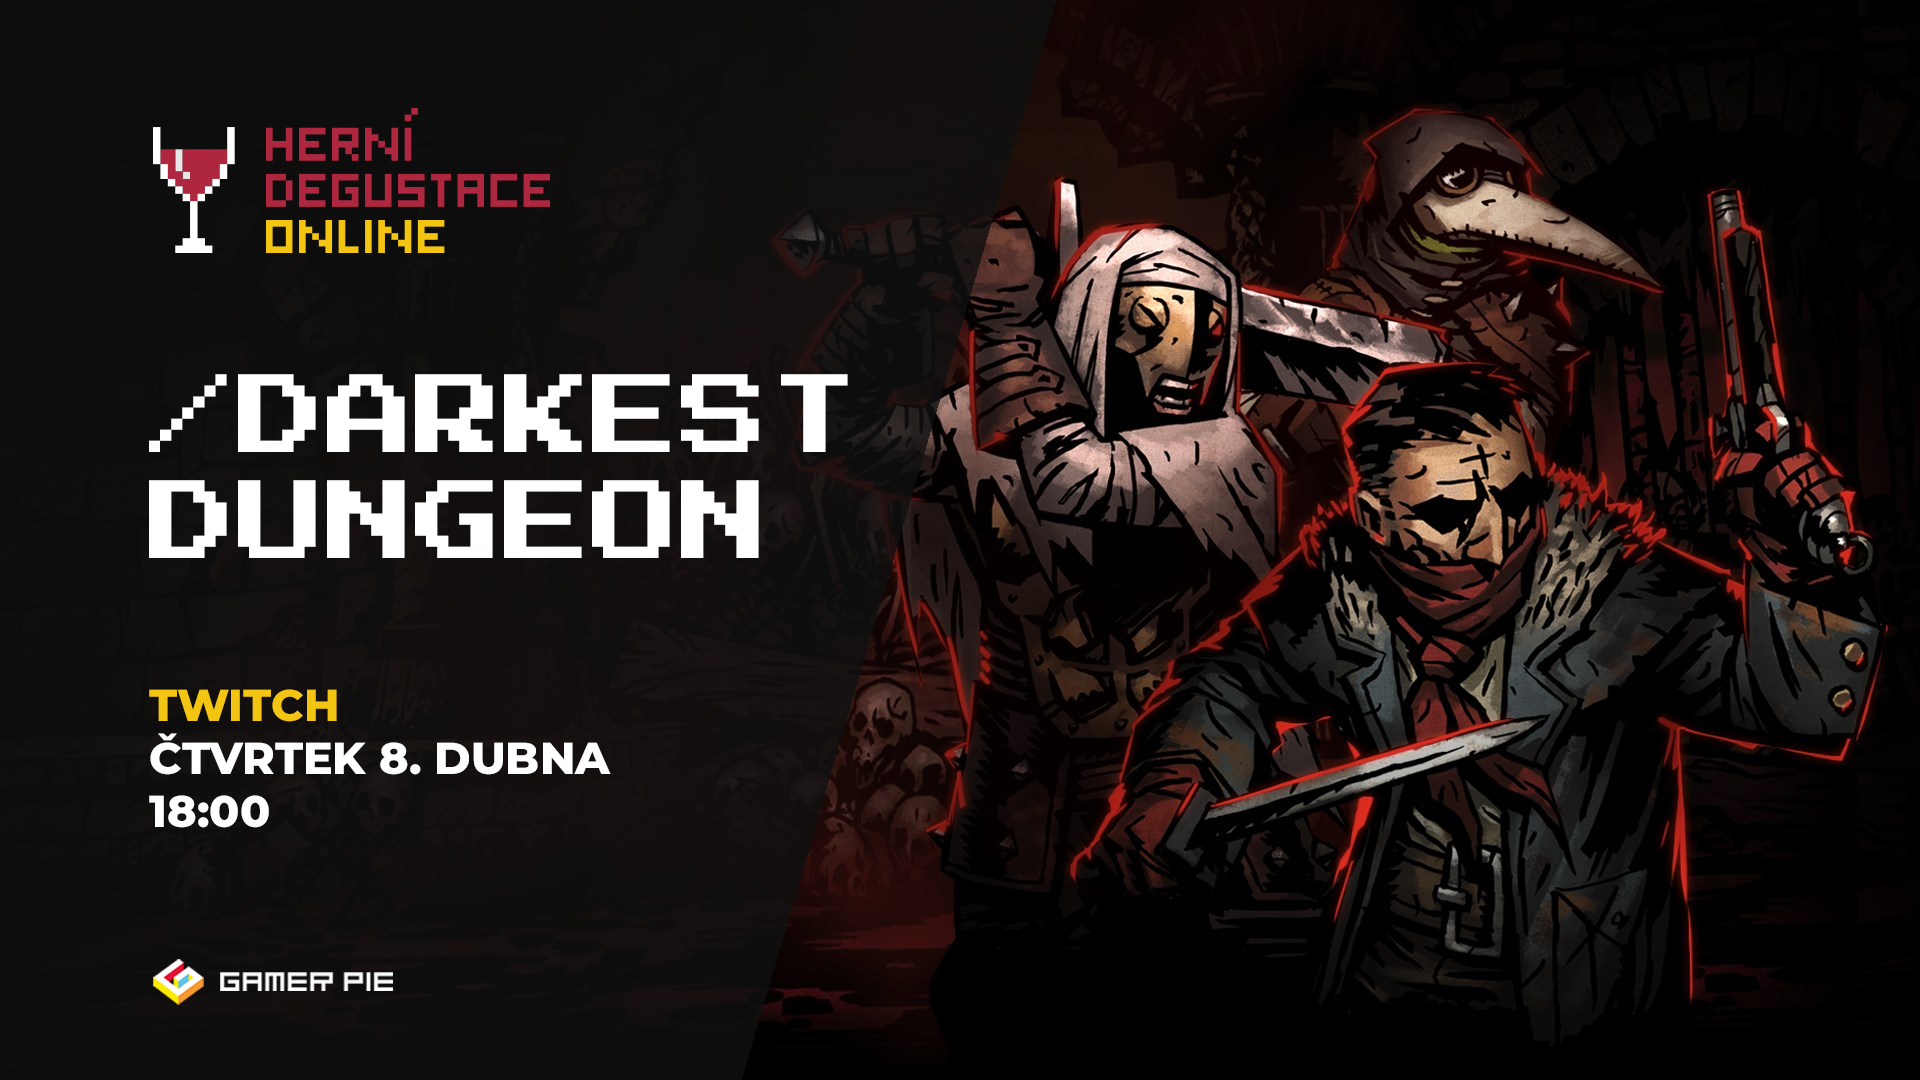 Herní Degustace Online -> Darkest Dungeon